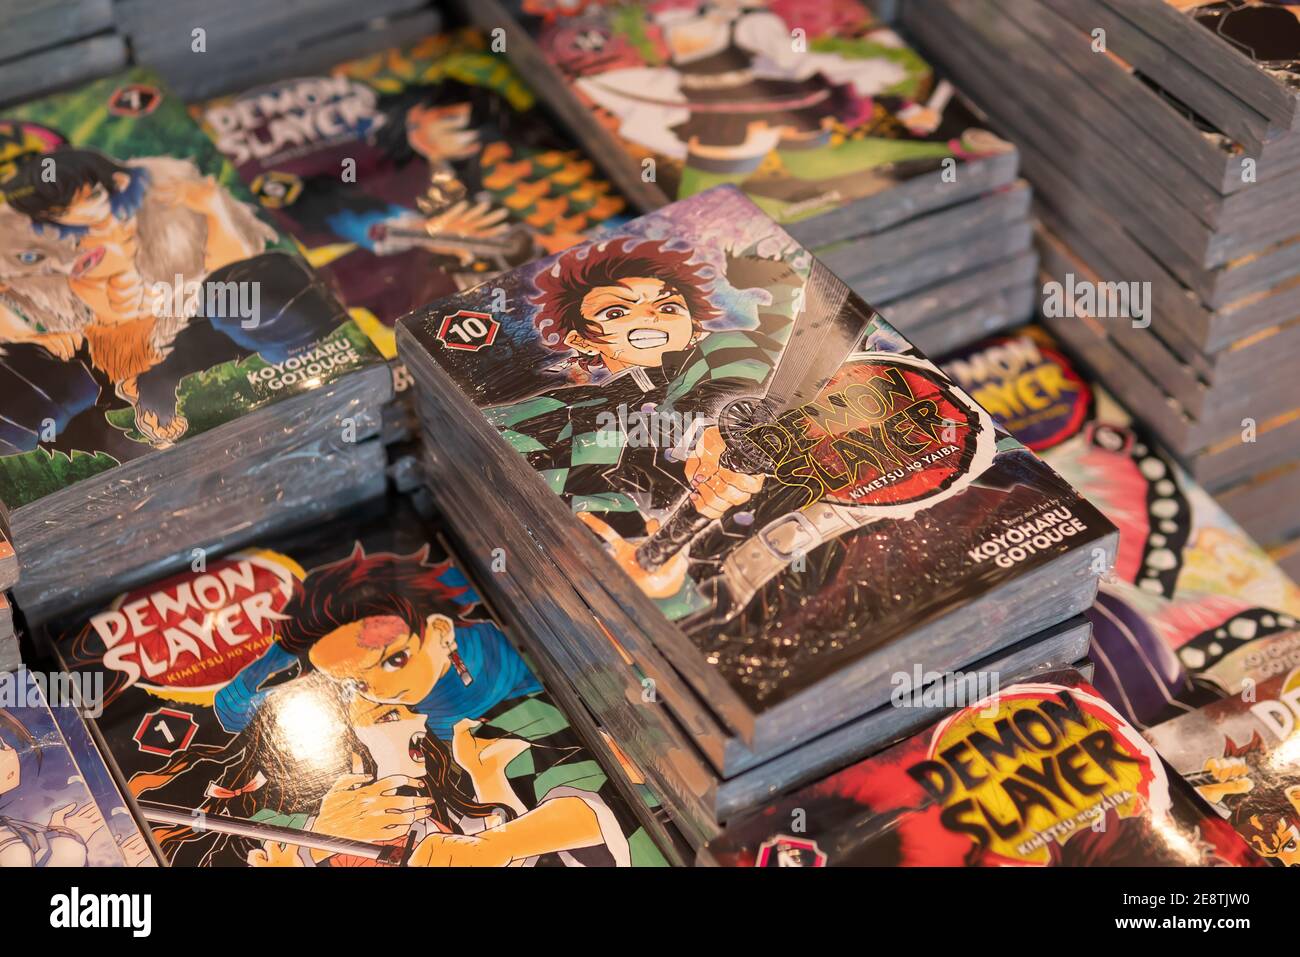 Bangkok, Thailandia - 14 settembre 2020 : Kimetsu no Yaiba o Demon Slayer, serie manga giapponese, libri sono stati esposti in una libreria. Foto Stock